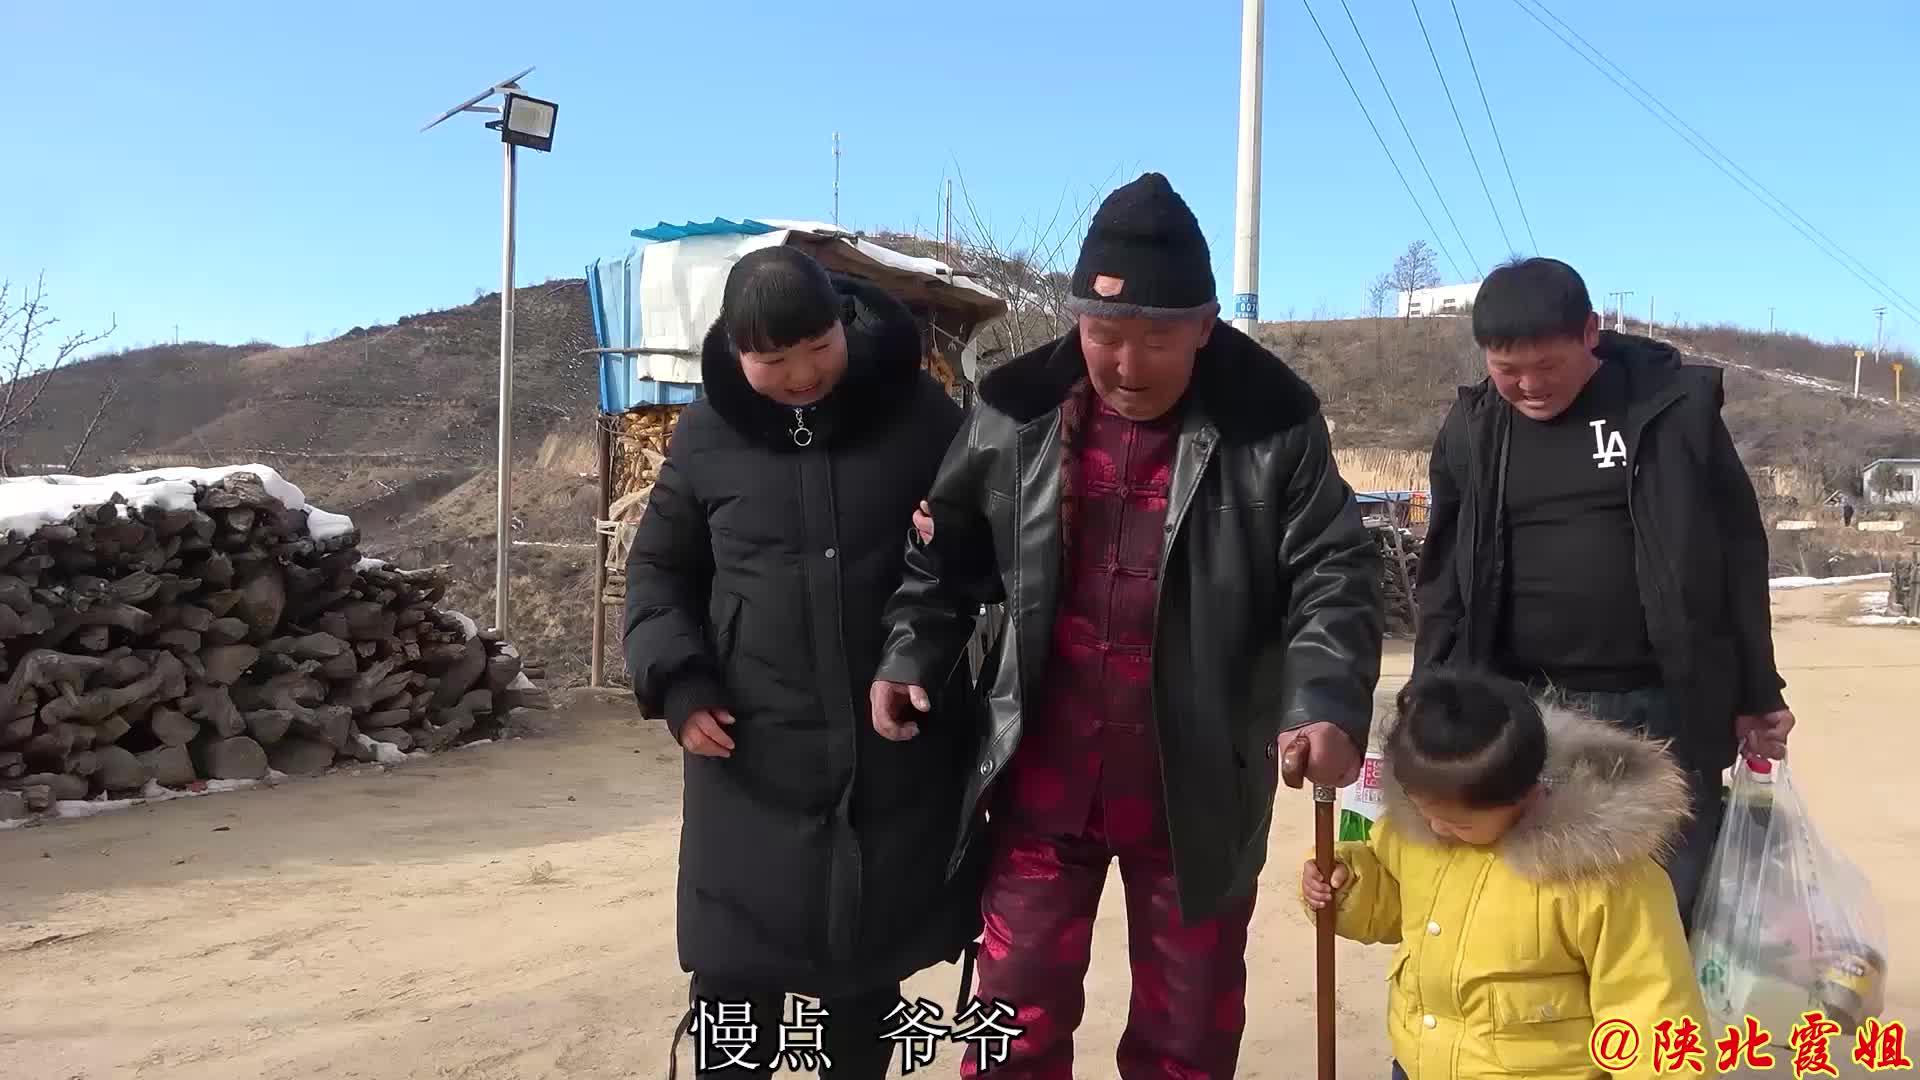 猪杀了300斤,霞姐用100斤做陕北农村传统腌猪肉,放一年也不会坏